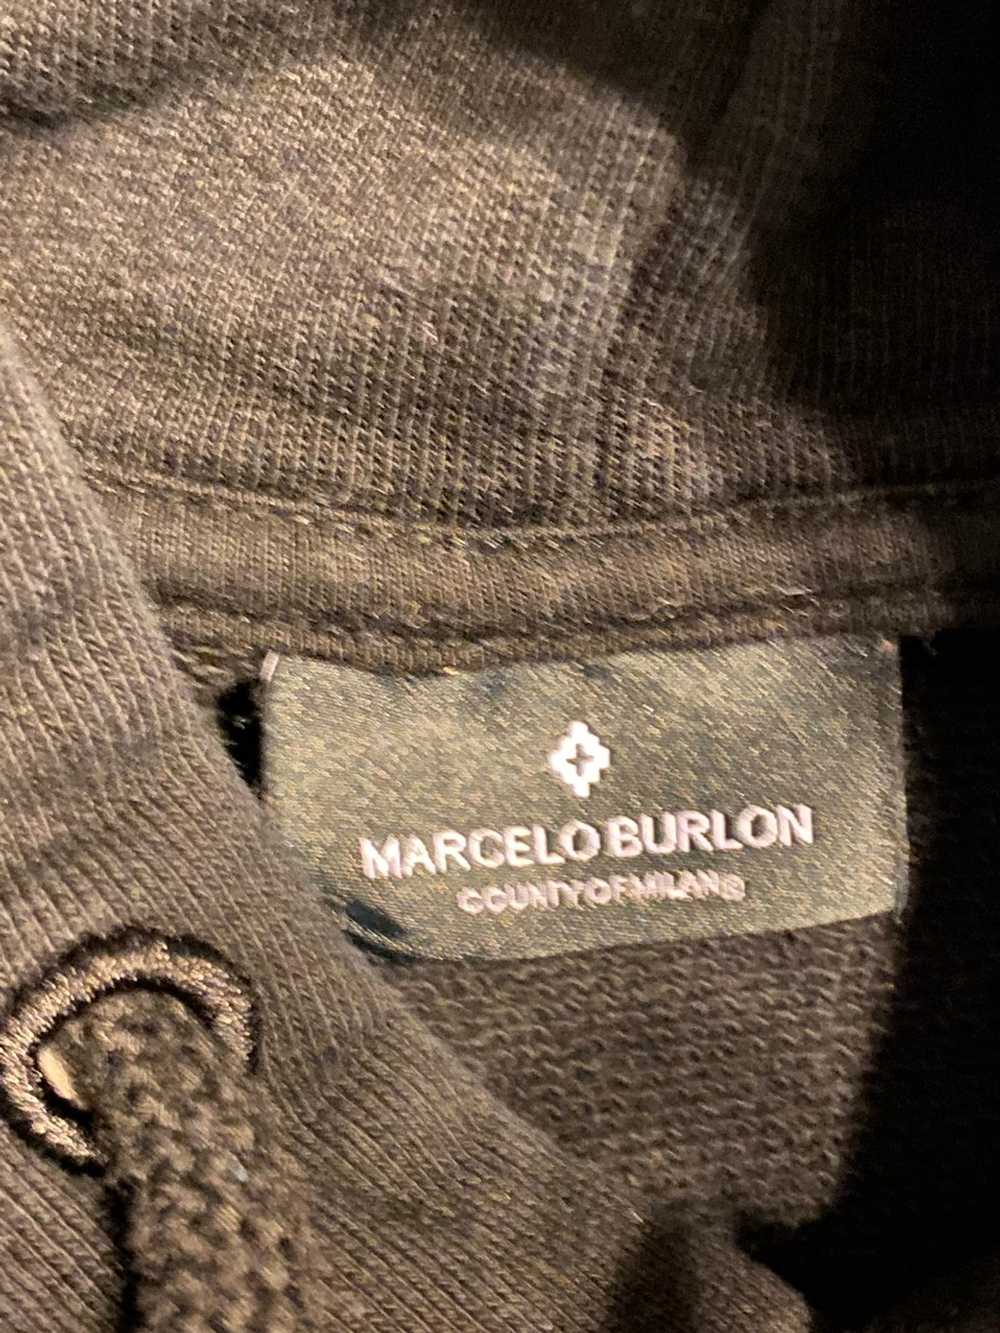 Marcelo Burlon Marcelo burlon hoodie - image 6